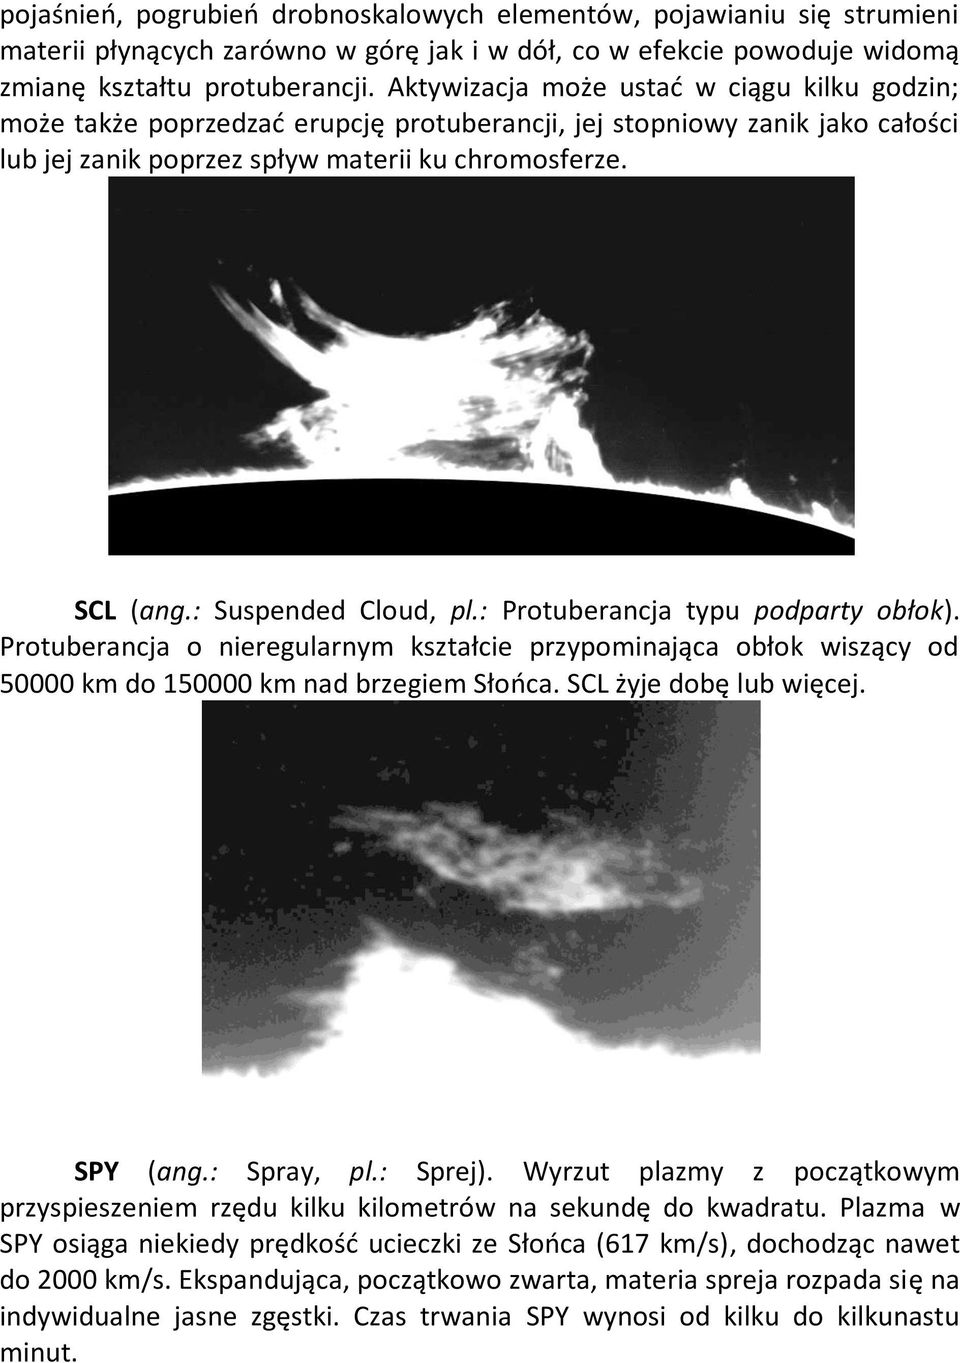 : Suspended Cloud, pl.: Protuberancja typu podparty obłok). Protuberancja o nieregularnym kształcie przypominająca obłok wiszący od 50000 km do 150000 km nad brzegiem Słońca. SCL żyje dobę lub więcej.